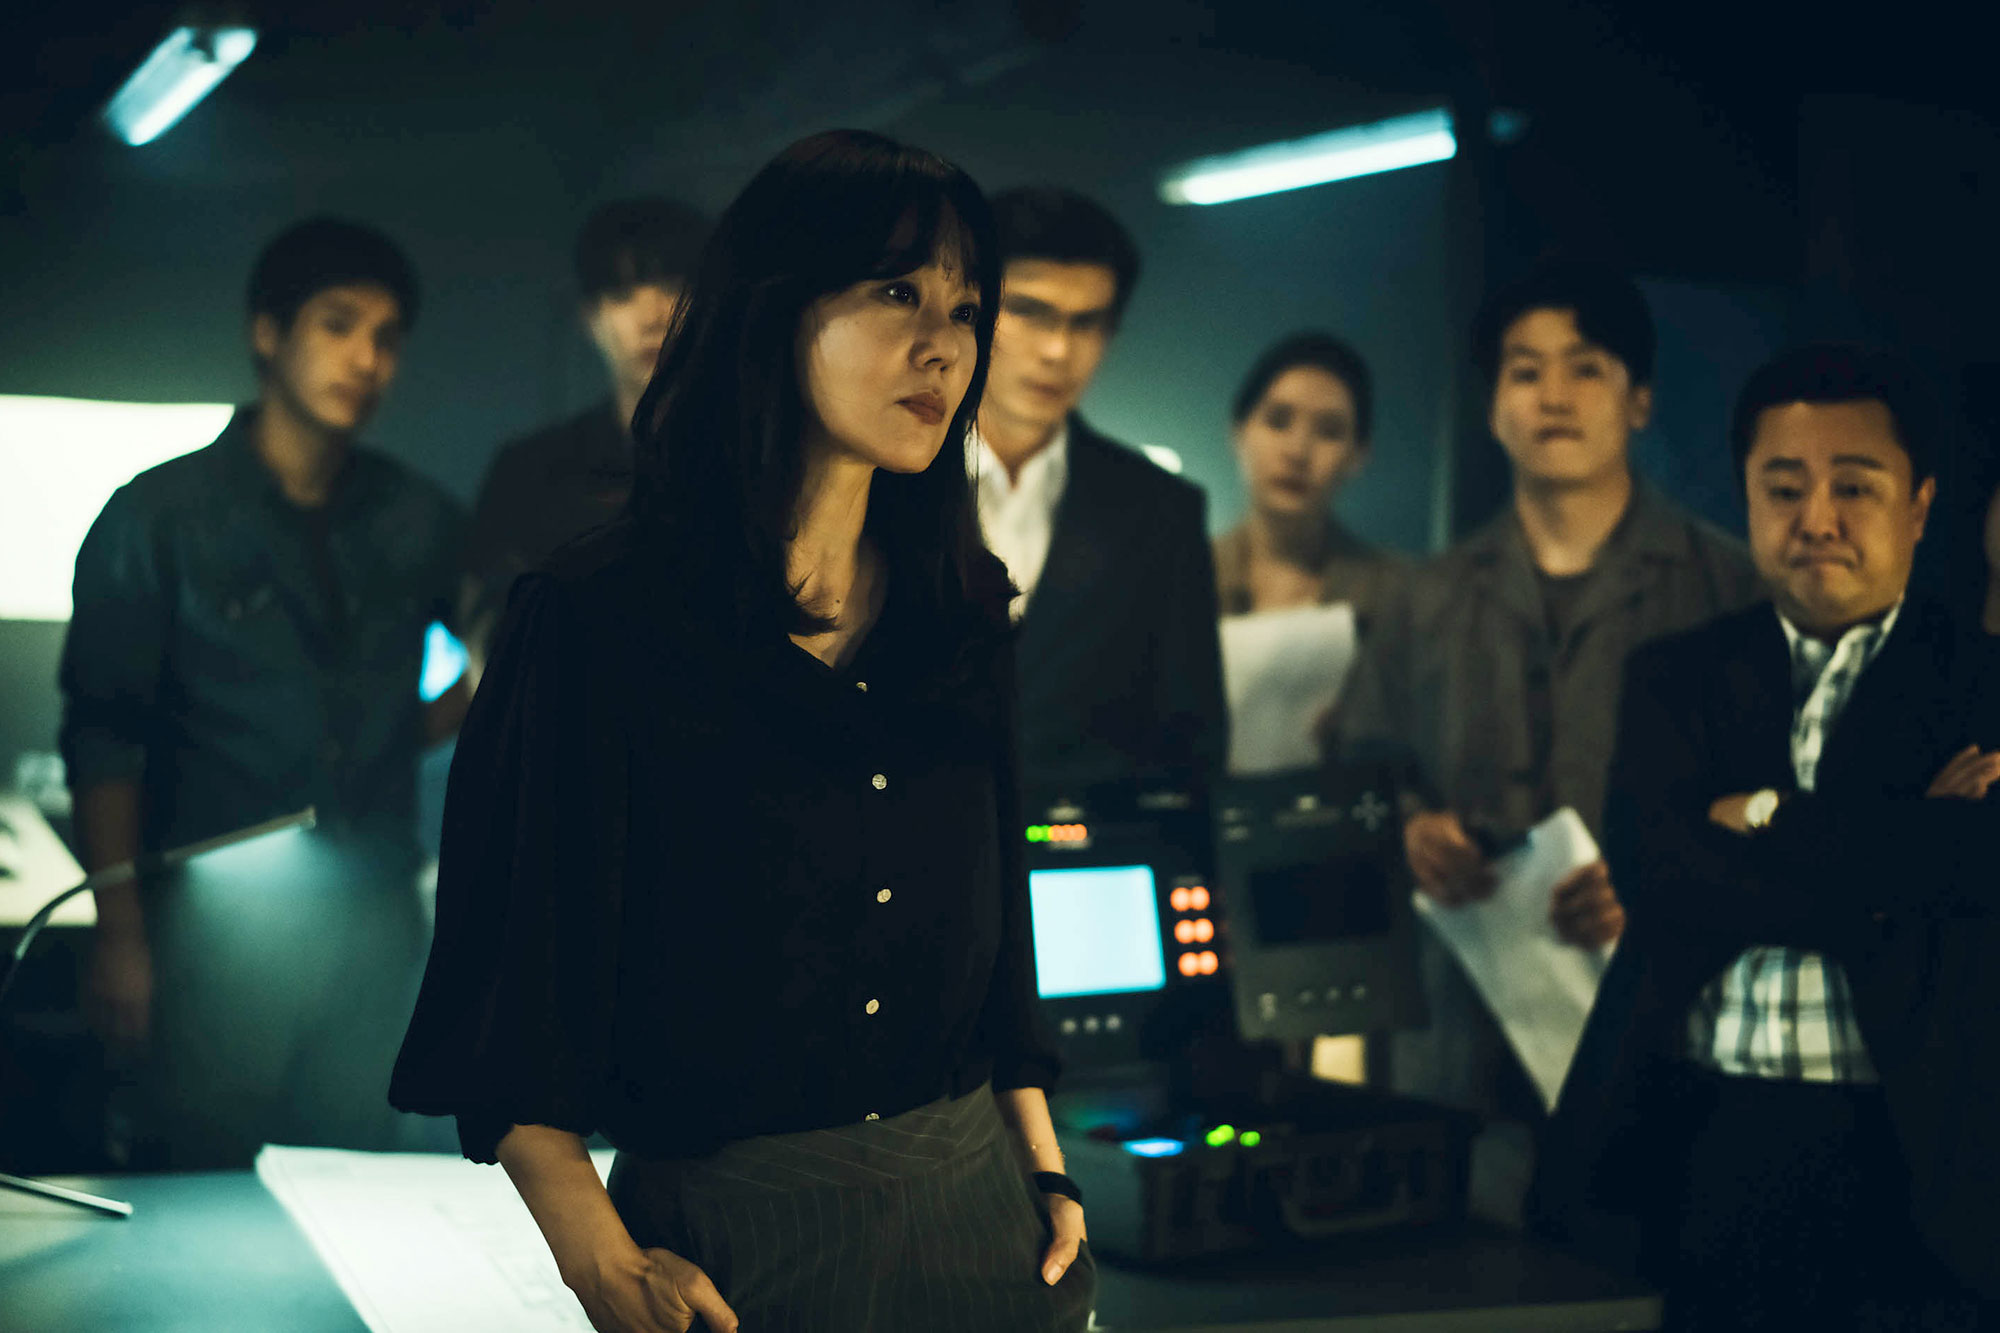 Mỹ nhân Hàn từng đóng nữ chính bom tấn Avatar: Diễn xuất xúc động, tiếc rằng không thể góp mặt chính thức - Ảnh 7.